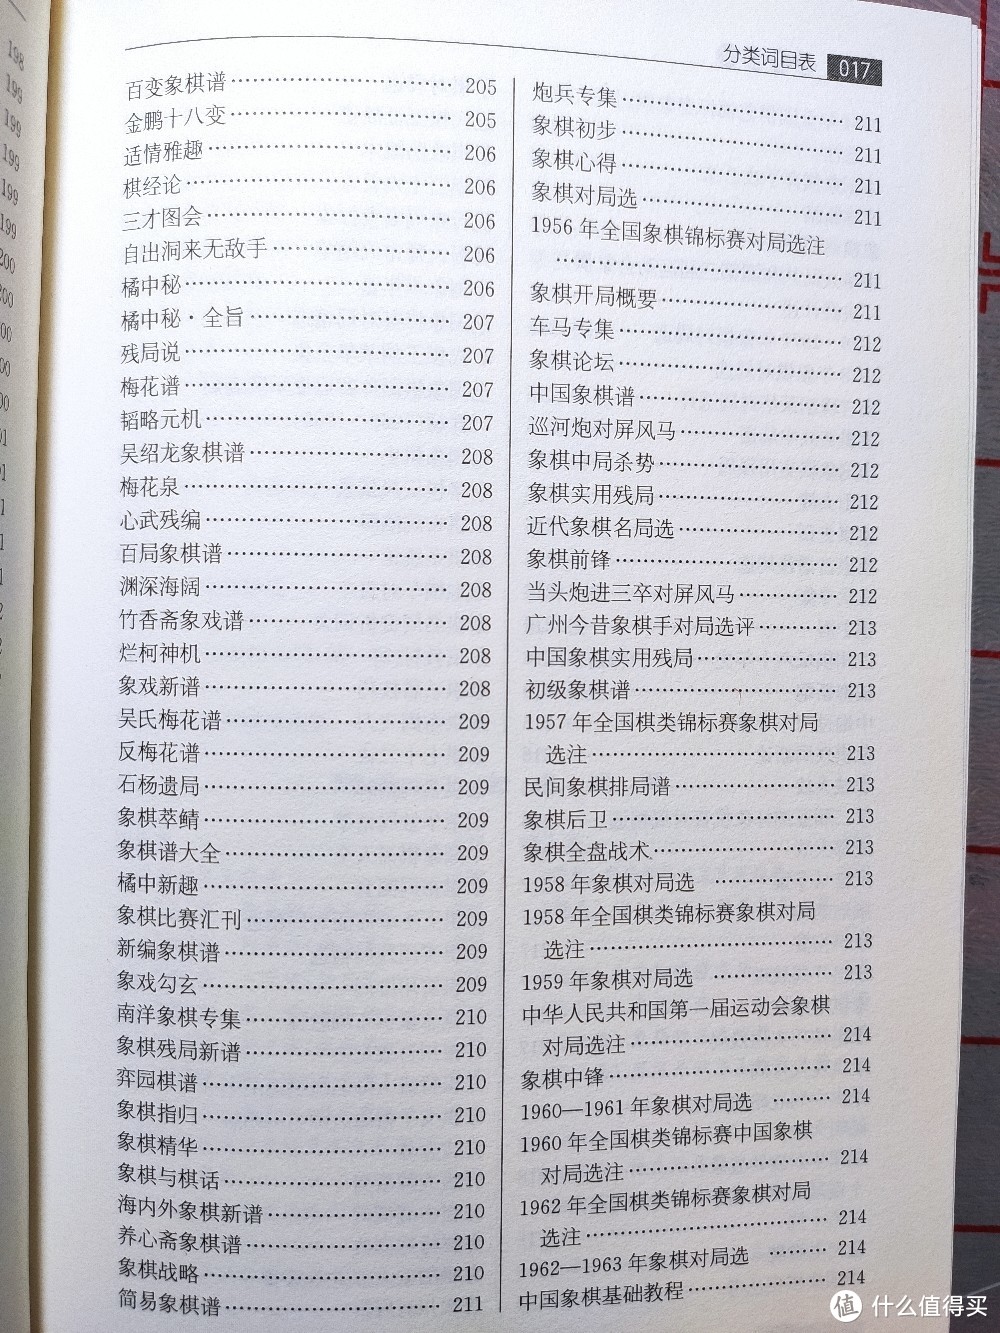 上海文化出版社修订版《象棋词典》小晒